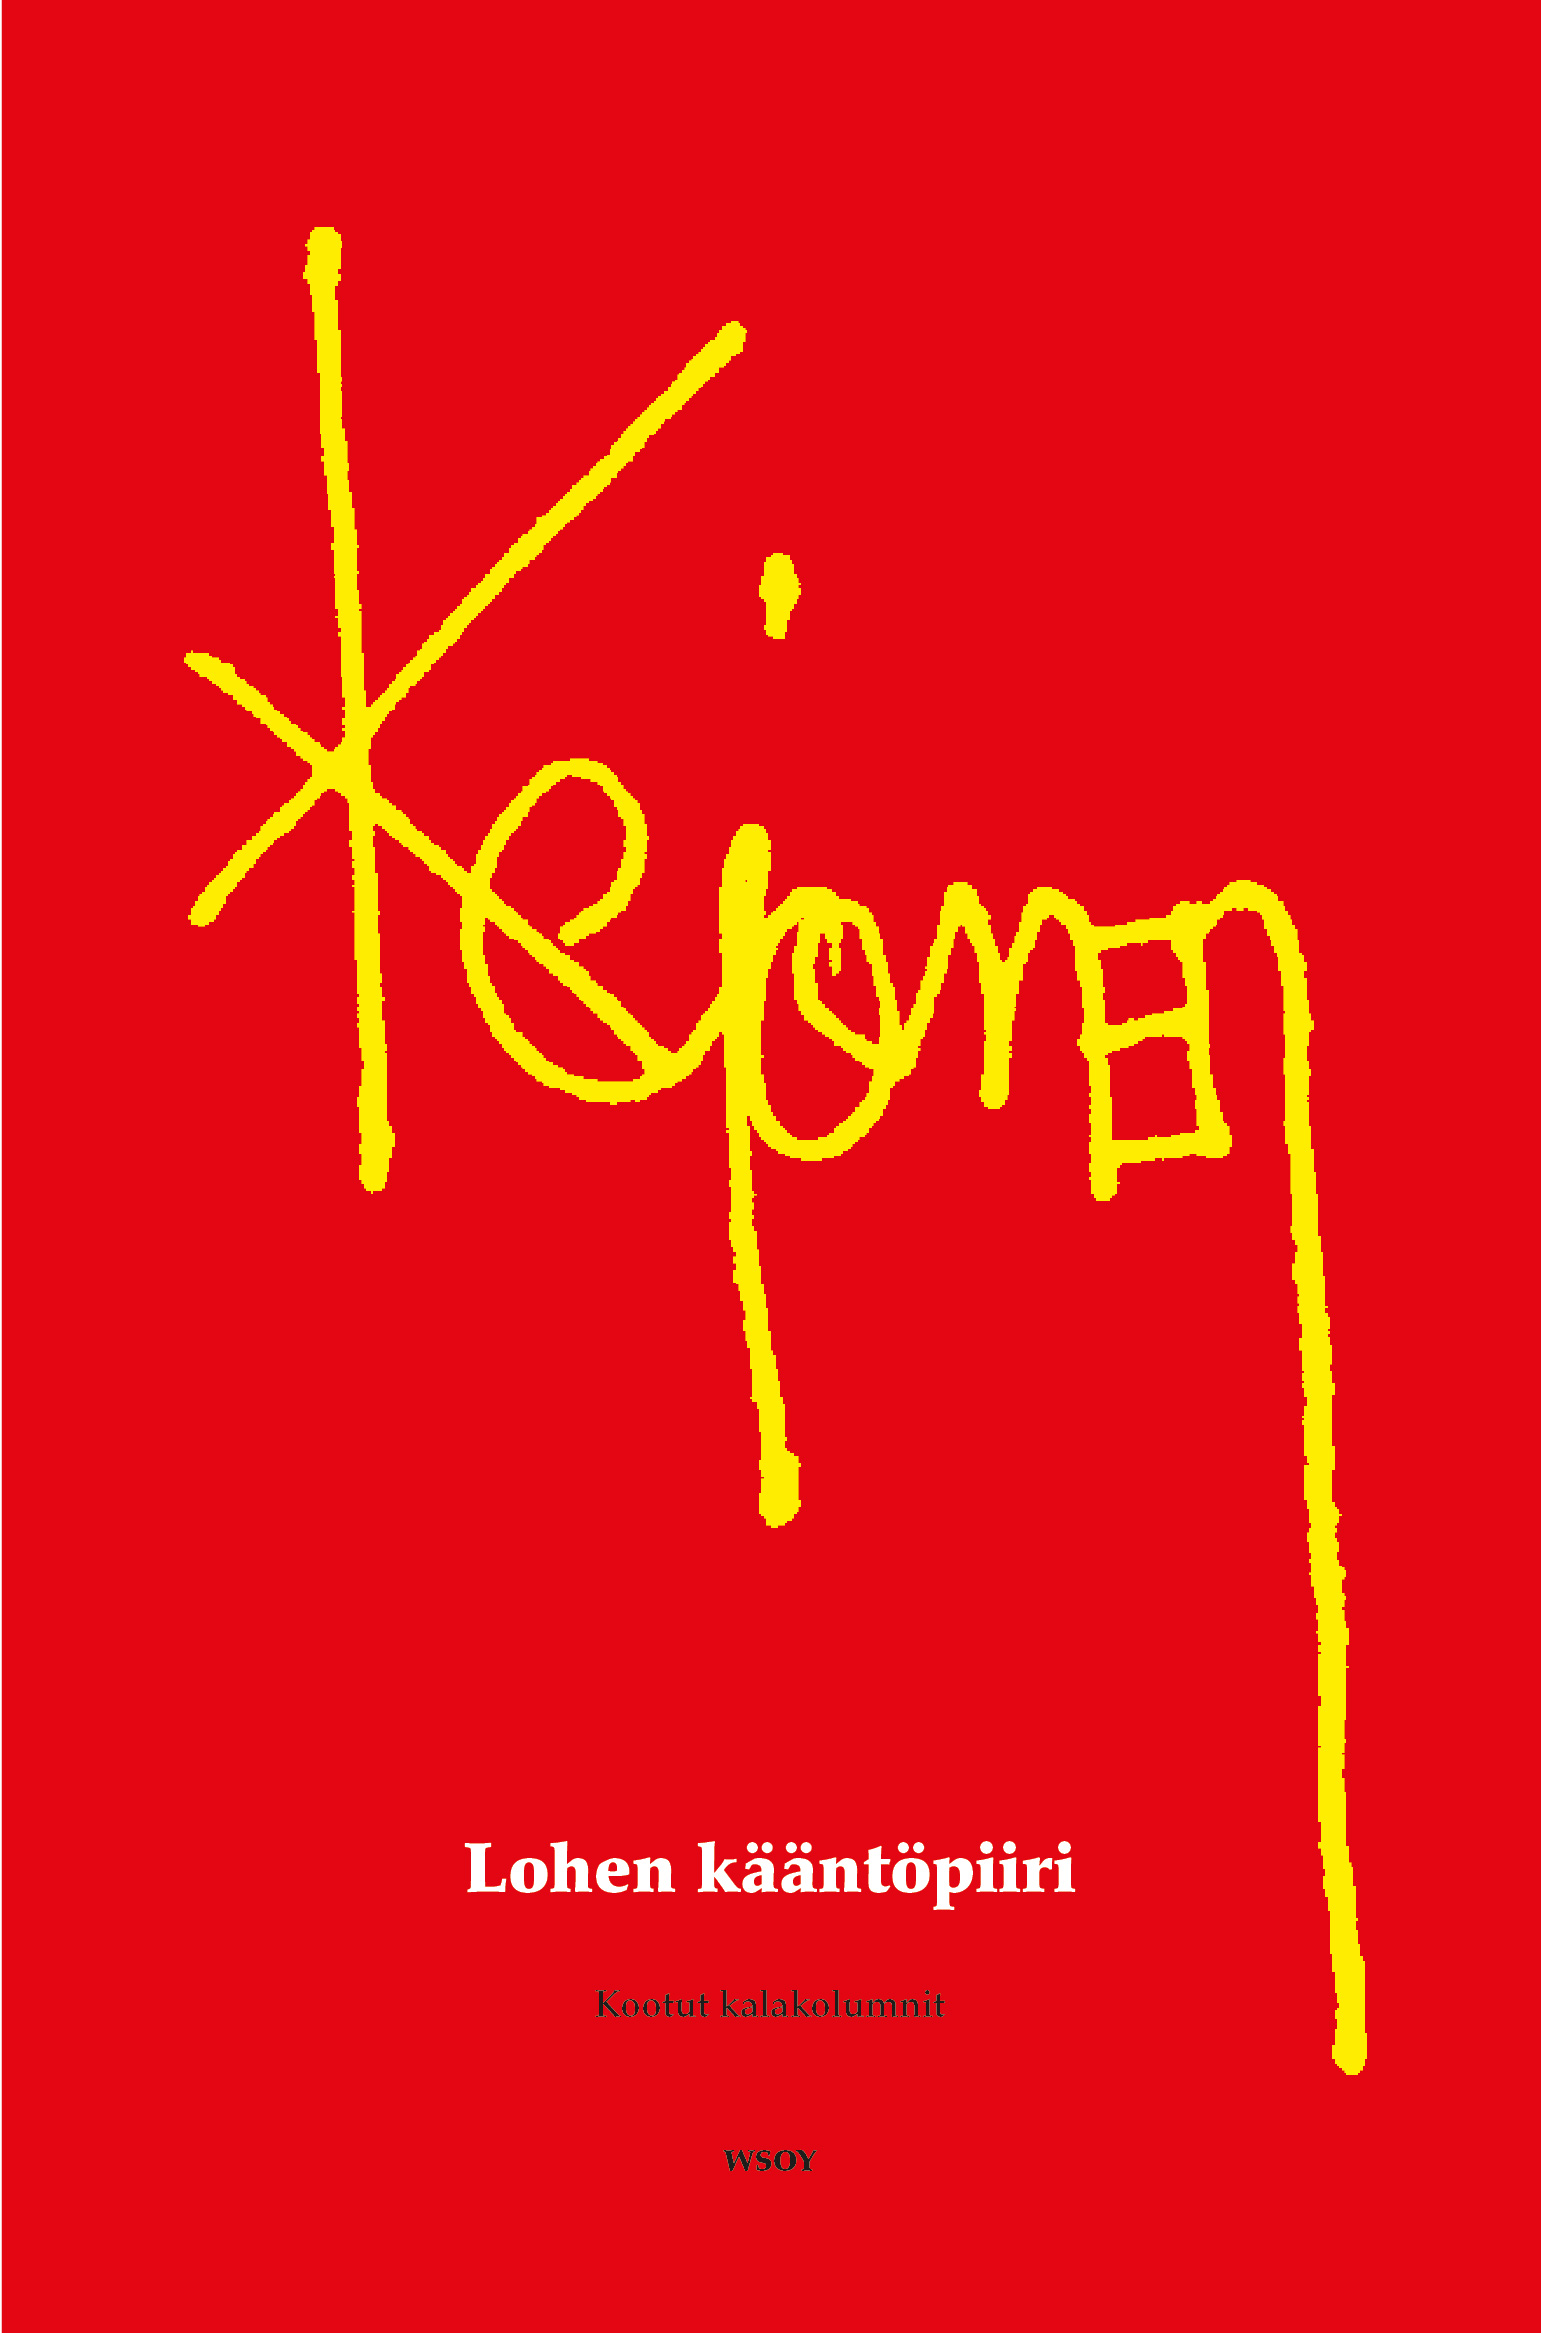 Kejonen, Pekka - Lohen kääntöpiiri: Kootut kalakolumnit, e-bok